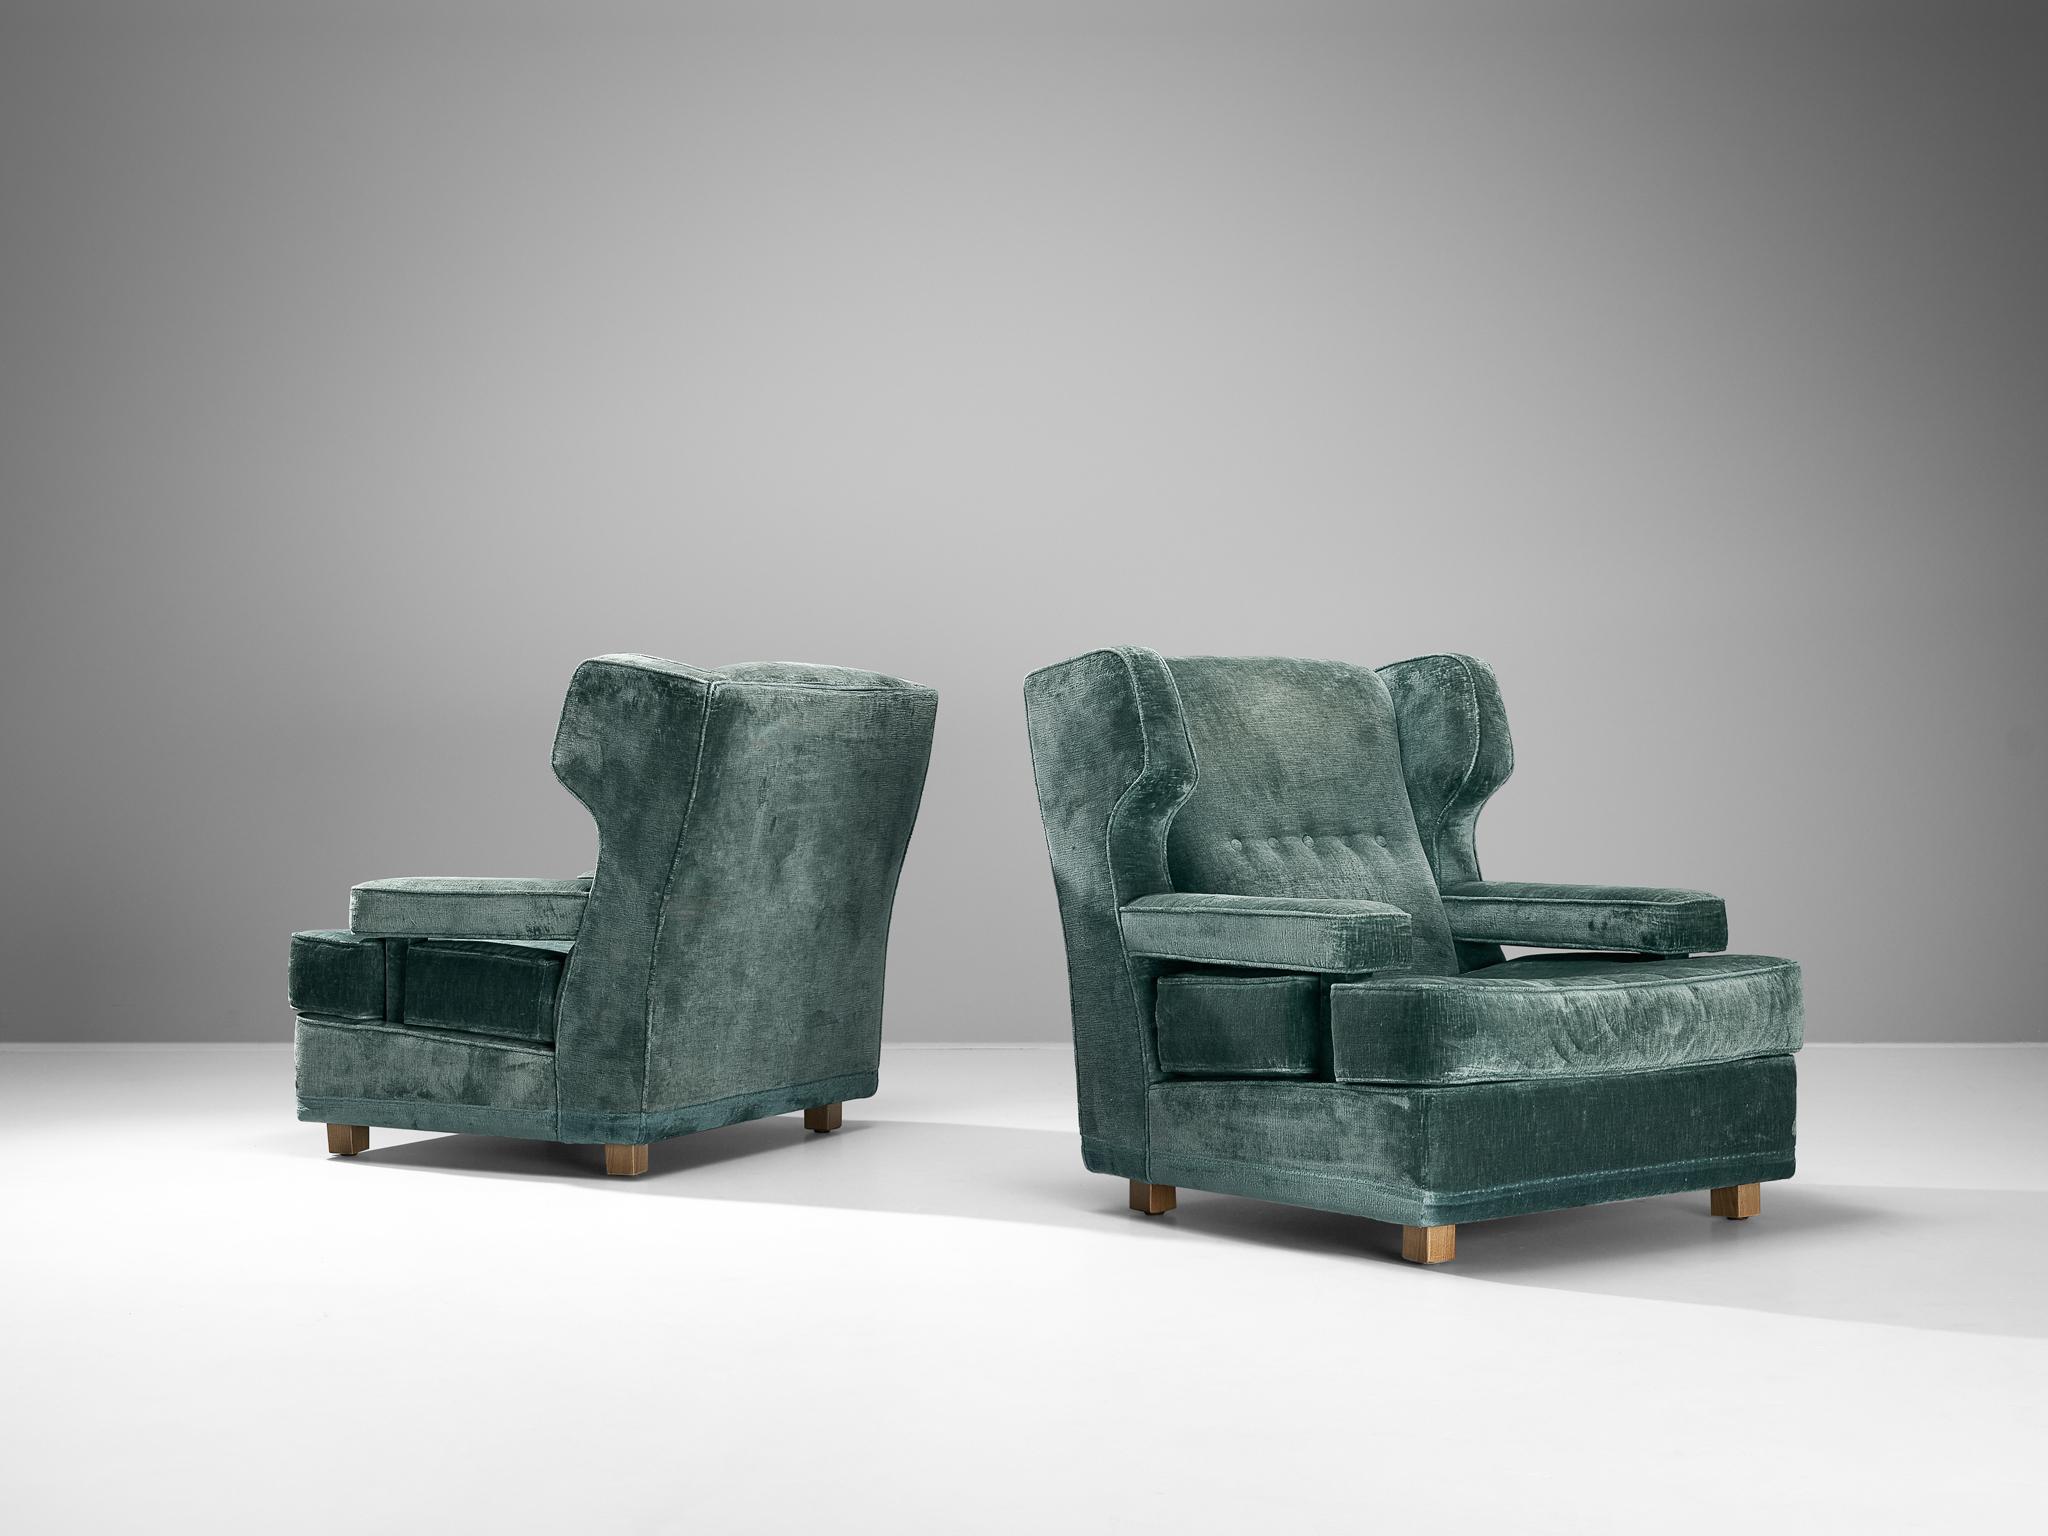 Paar Sessel, Samt, Buche, Italien, 1940er Jahre

Die in Italien hergestellten Sessel haben eine robuste Struktur, die mit eleganten Ohren und akzentuierten, spitzen Ecken verziert ist. Die geneigte Rückenlehne, die ausladenden Armlehnen und die